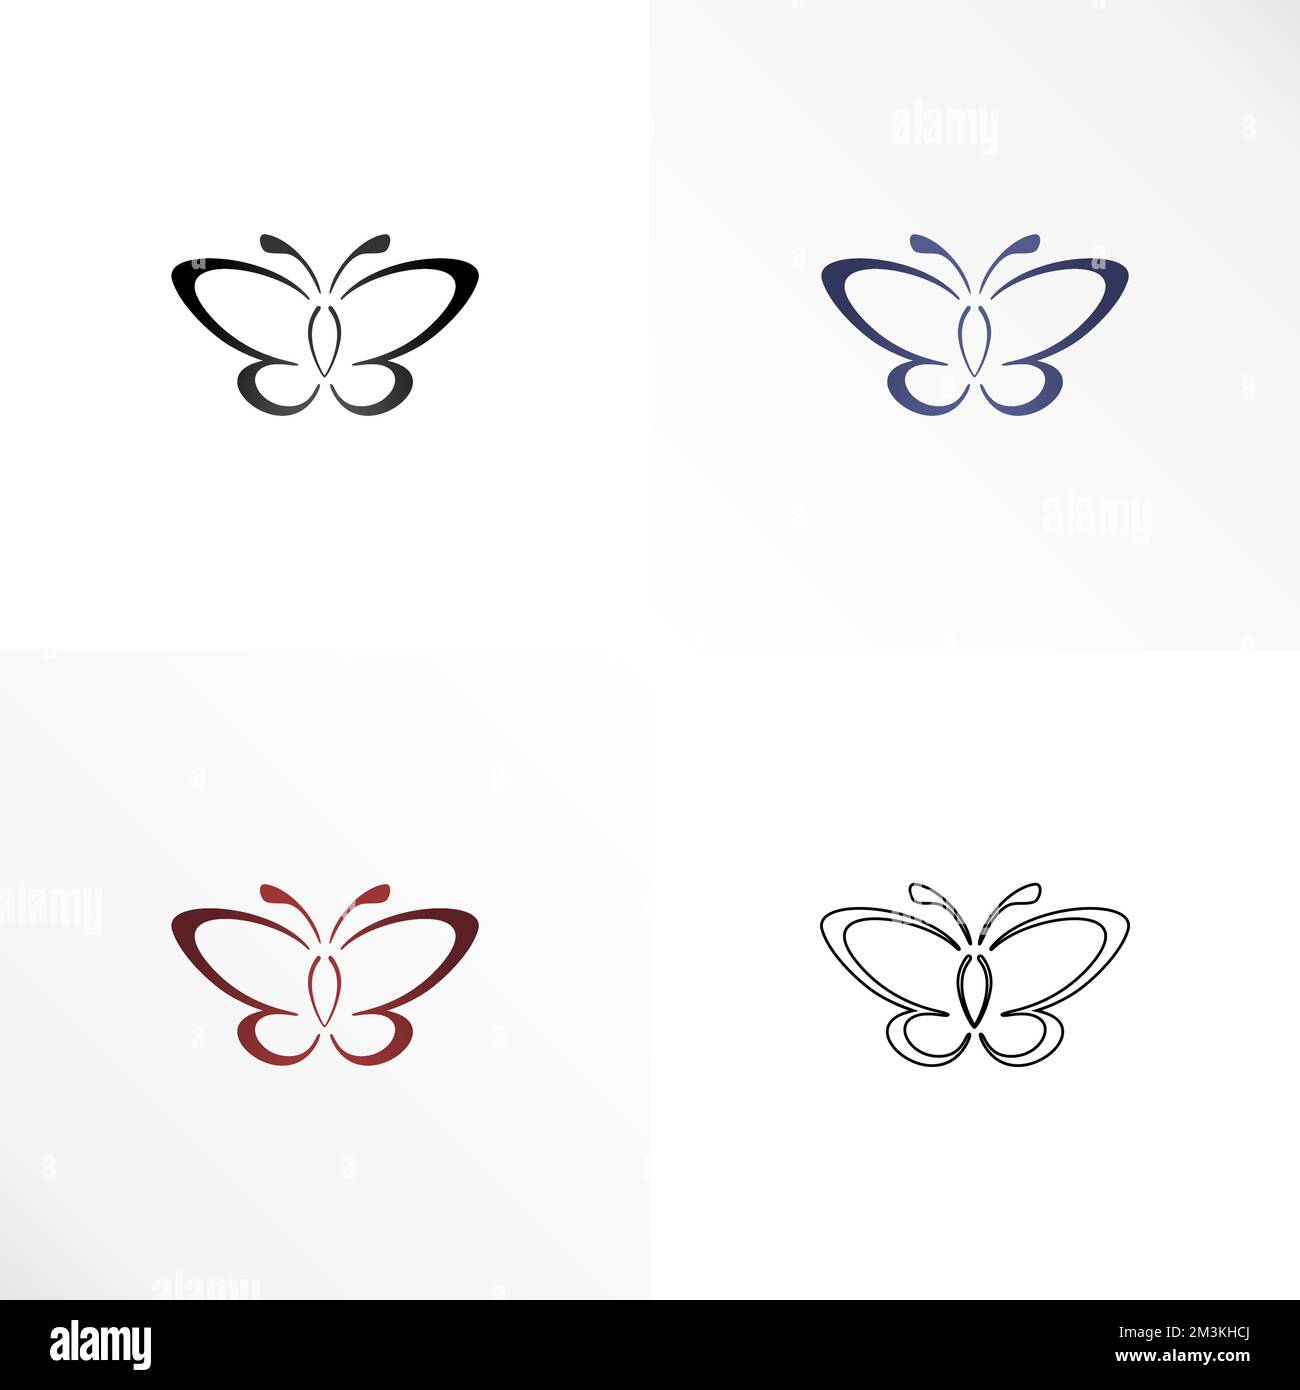 Simple y única mariposa en línea arte forma imagen gráfico icono logotipo diseño abstracto concepto vector stock. Se puede utilizar como símbolo relacionado con el animal Ilustración del Vector